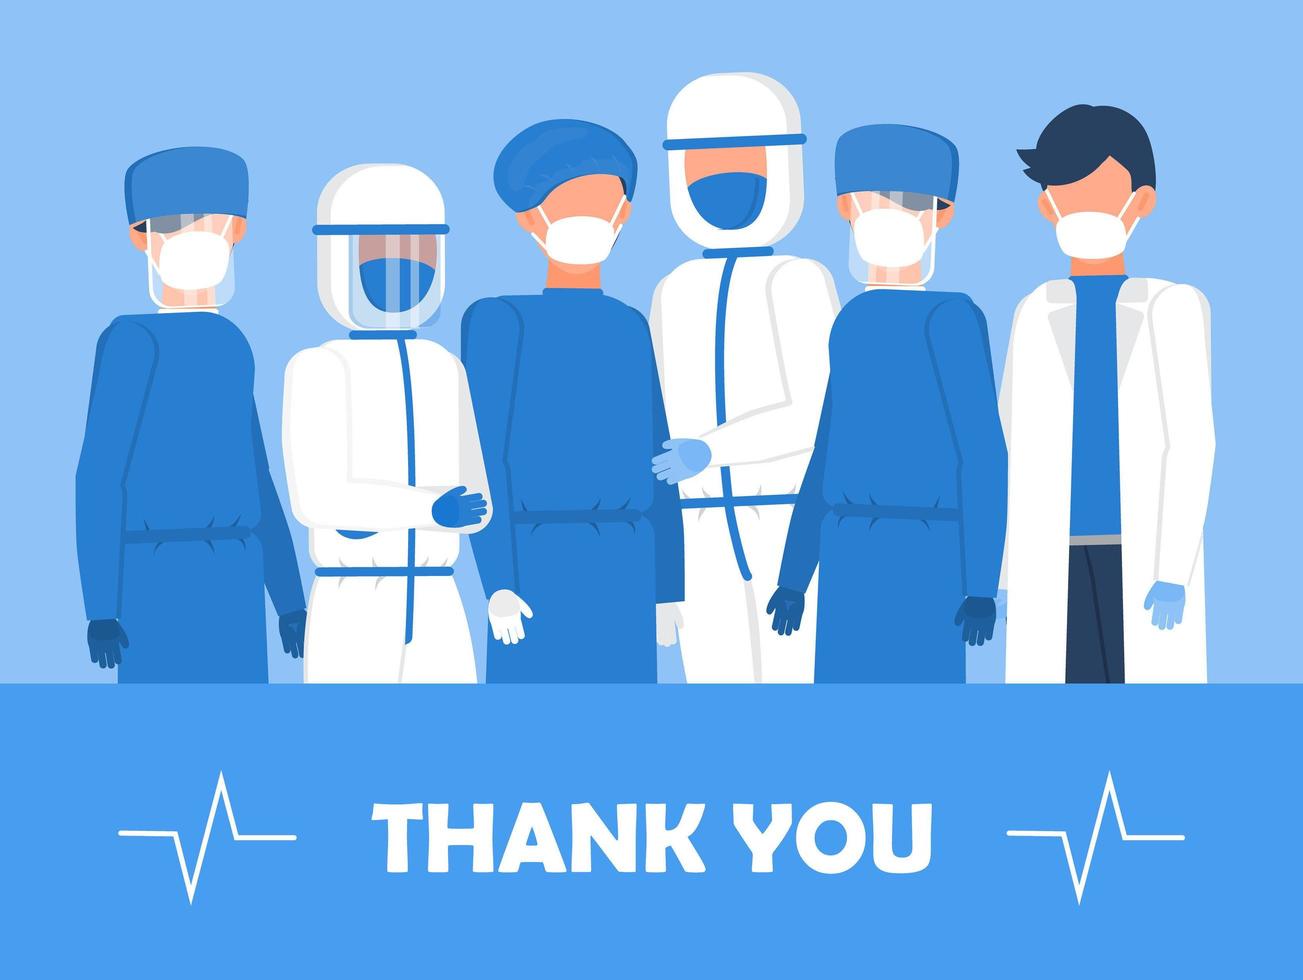 tack läkare och sjuksköterskor som arbetar på sjukhusen. intensivvårdsmottagning med luftsyresensor visas i bakgrunden. tack till läkare för kampen mot coronaviruset. vektor